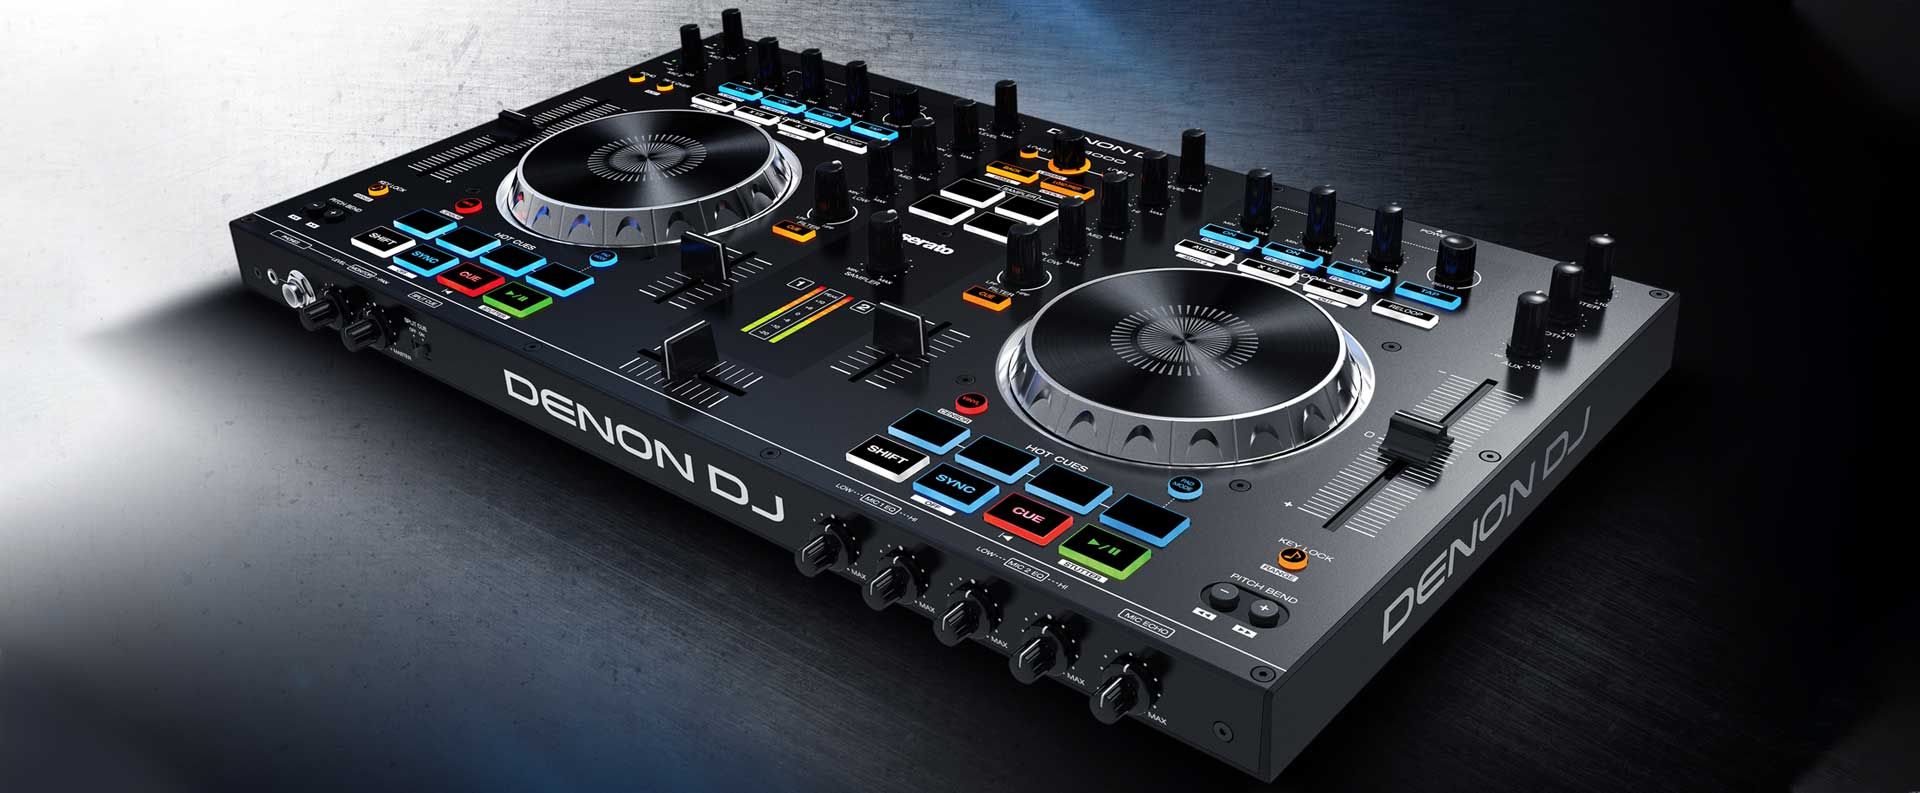 Denon DJ MC4000 2-Ch 2-Deck Serato DJ Controller New W/ NOVIK MIC and 2 XLR Cables. 